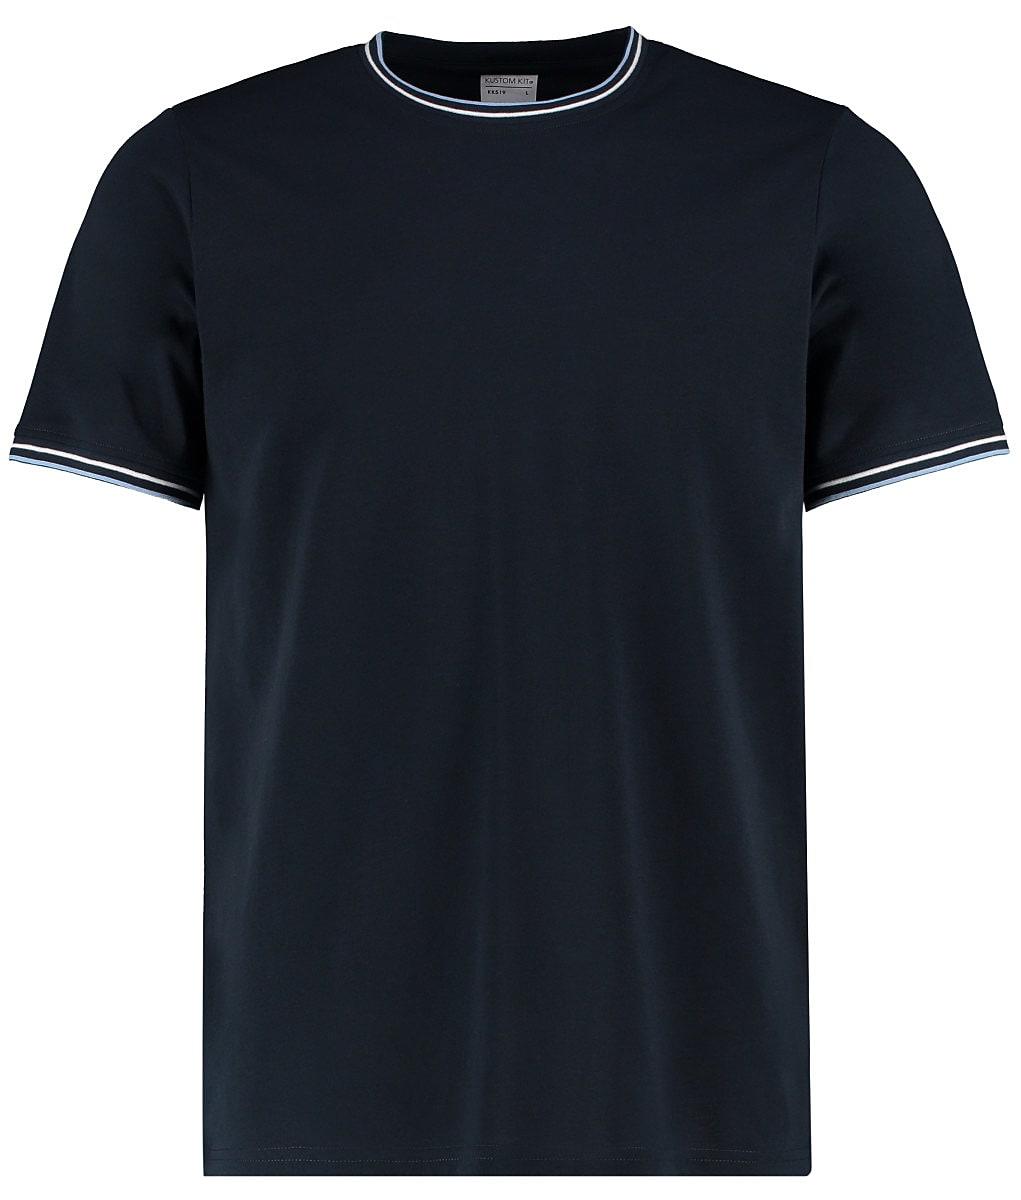 Kustom Kit Mens Tipped T-Shirt in Navy / White / Light Blue (Product Code: KK519)